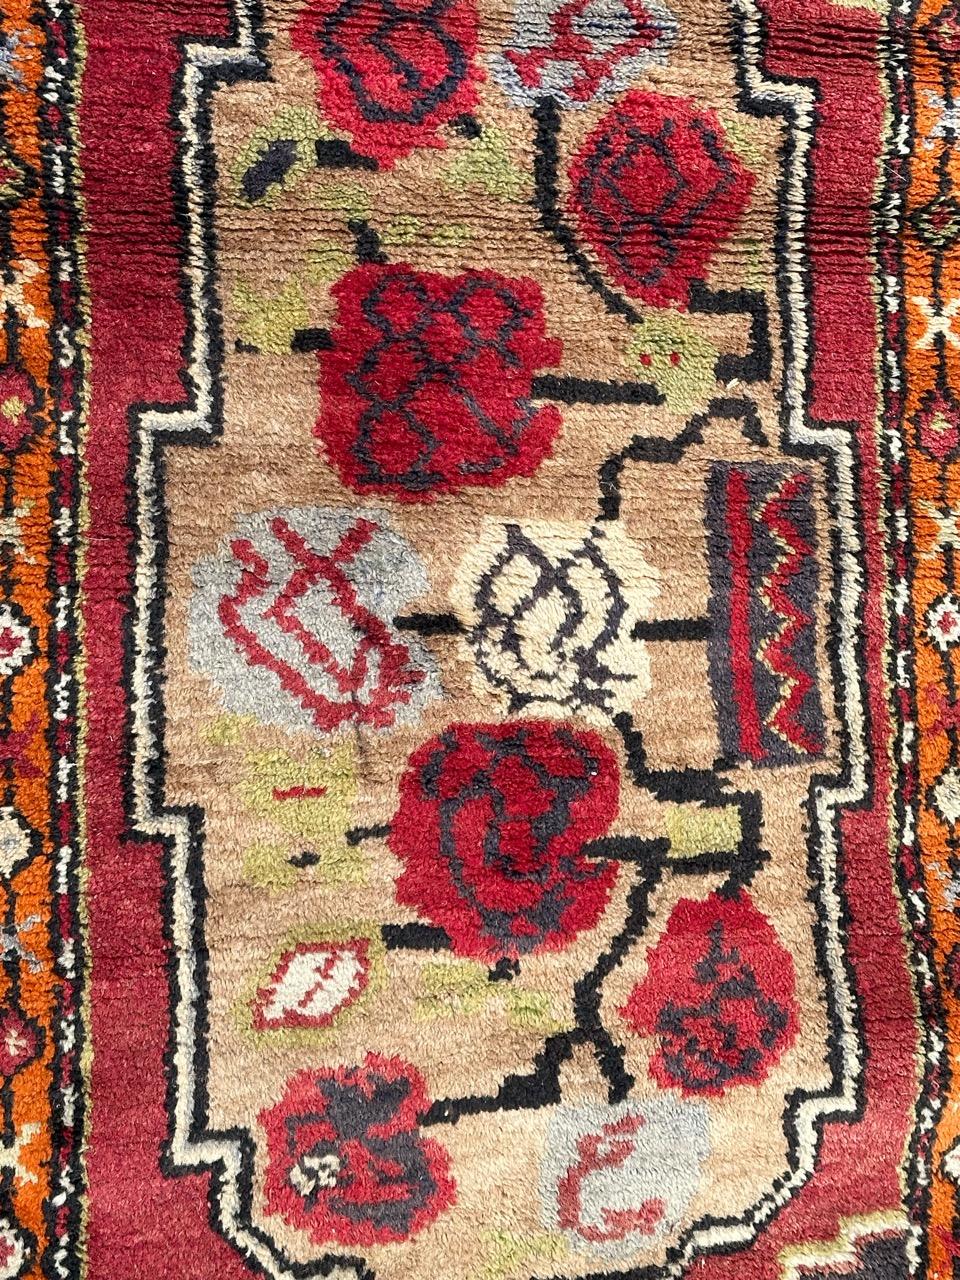 Hübscher türkischer Yastik-Teppich aus der Mitte des Jahrhunderts mit schönem Design mit stilisierten Blumen und schönen Farben mit rot, blau, grün, beige, grau, orange, weiß und schwarz, komplett handgeknüpft mit Wolle auf  Baumwollbasis.